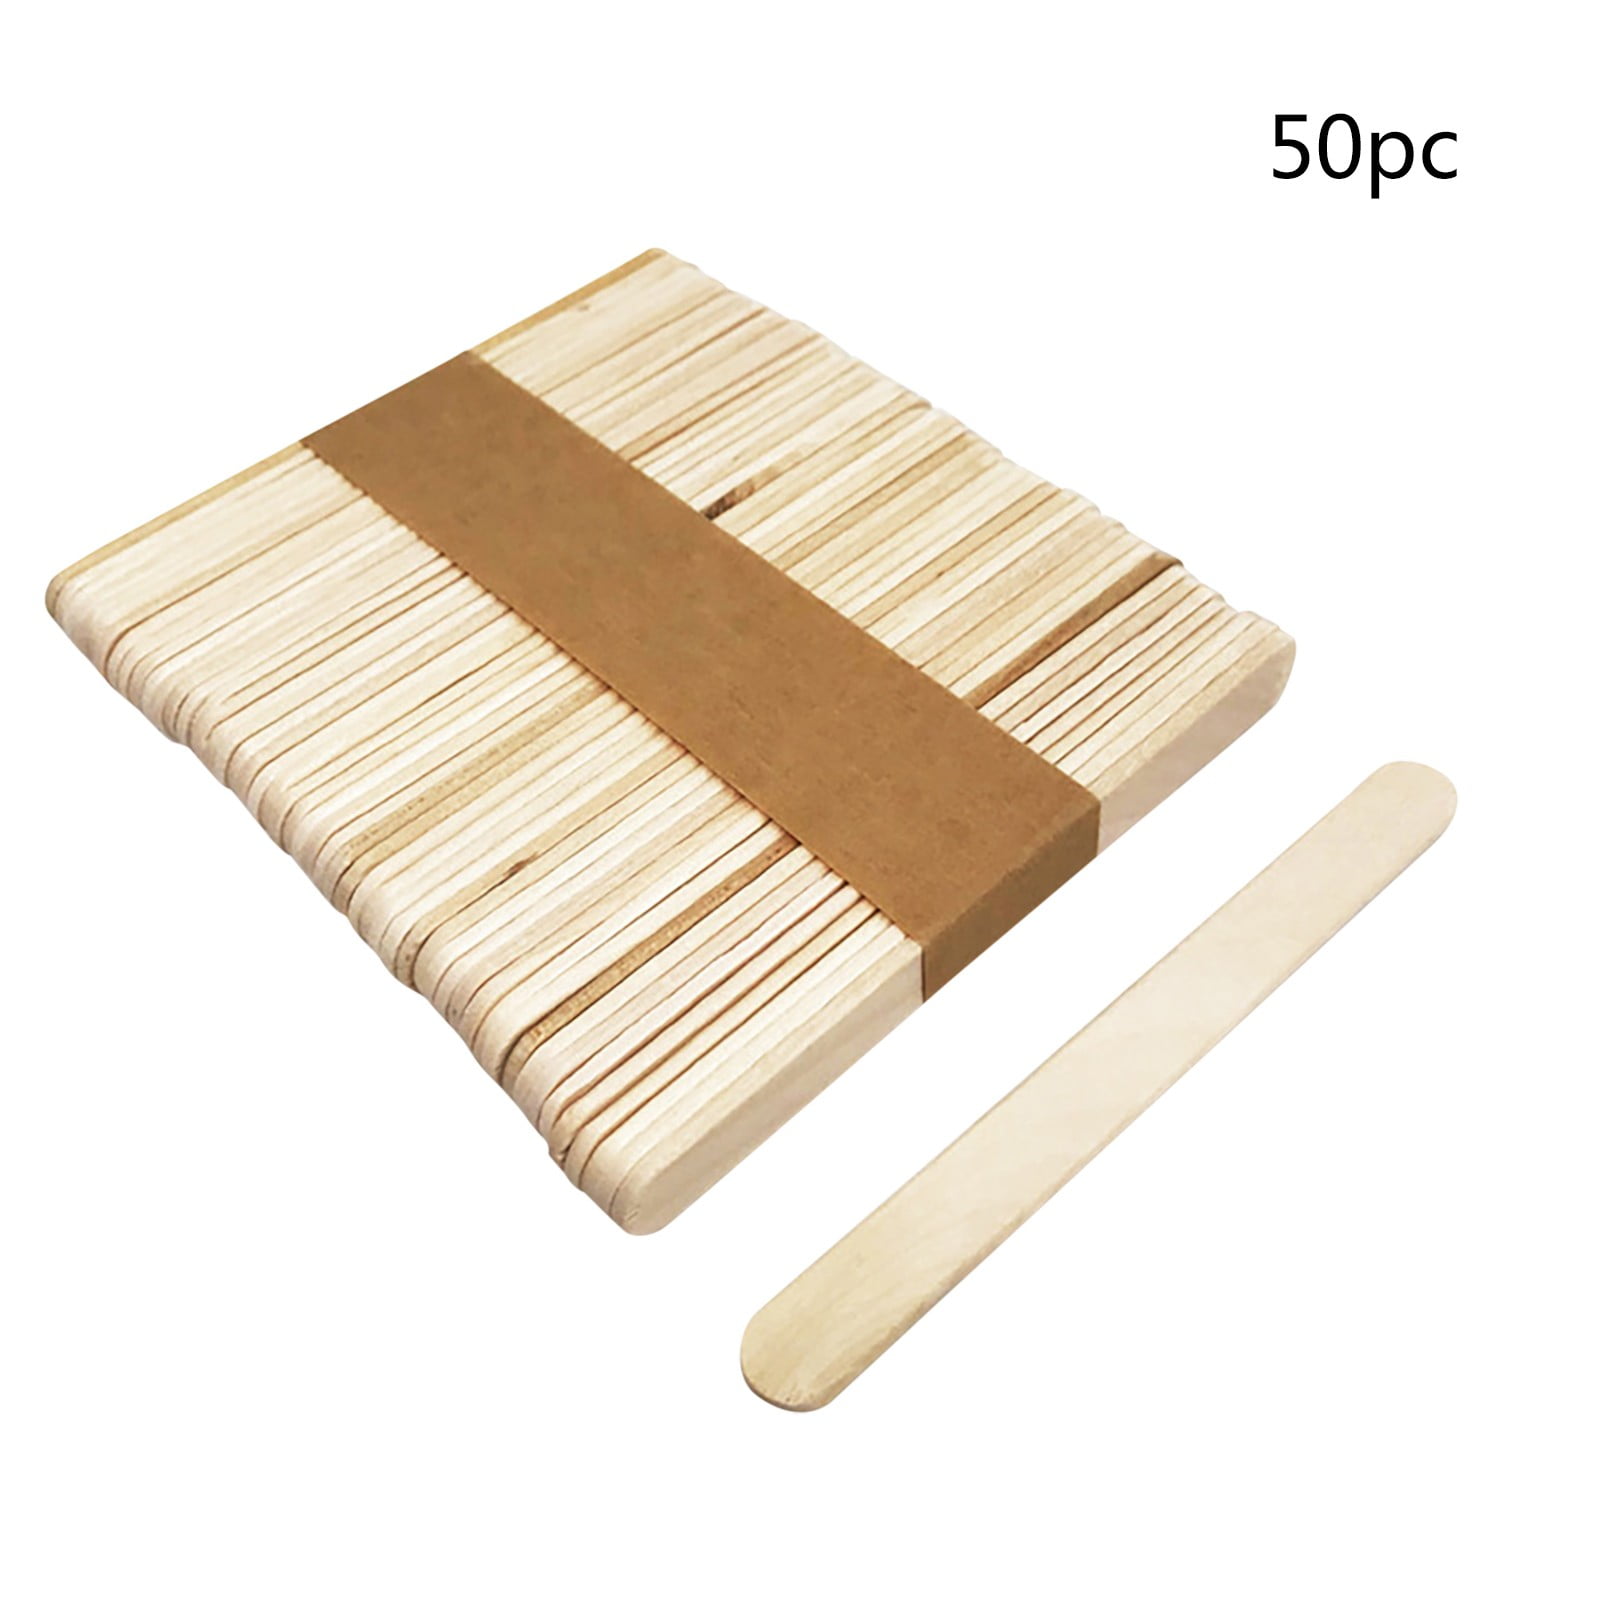 DKI Enterprises] 50pcs/Pack Wooden Popsicle Stick